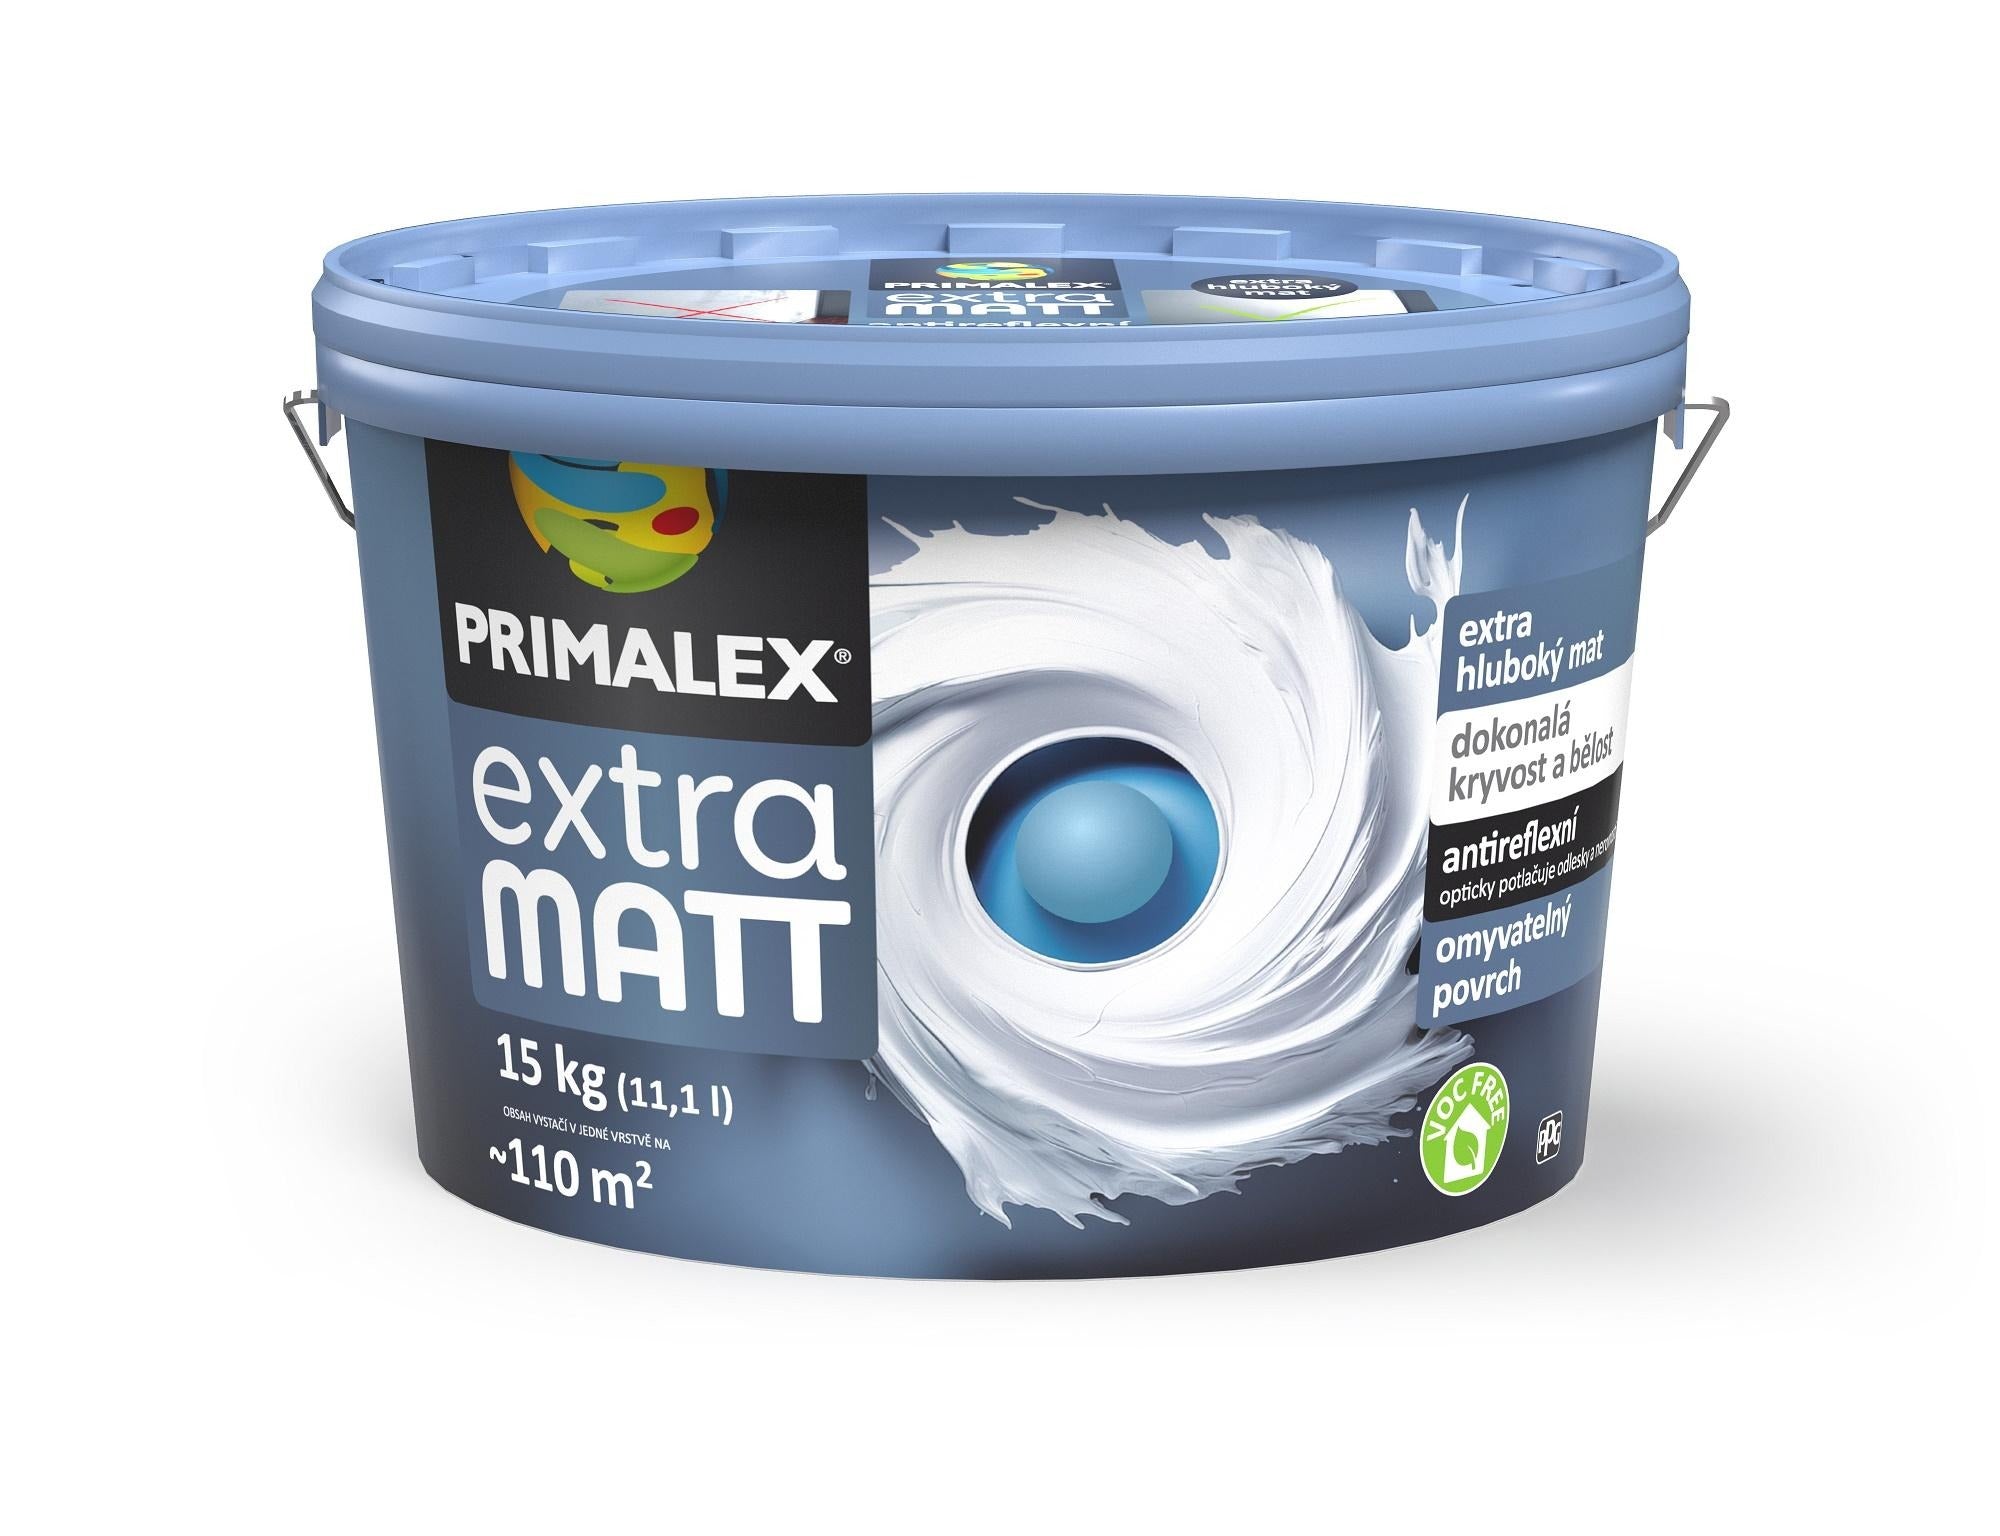 PRIMALEX extra matt snehobiela hlboko matná interiérová farba 15 kg